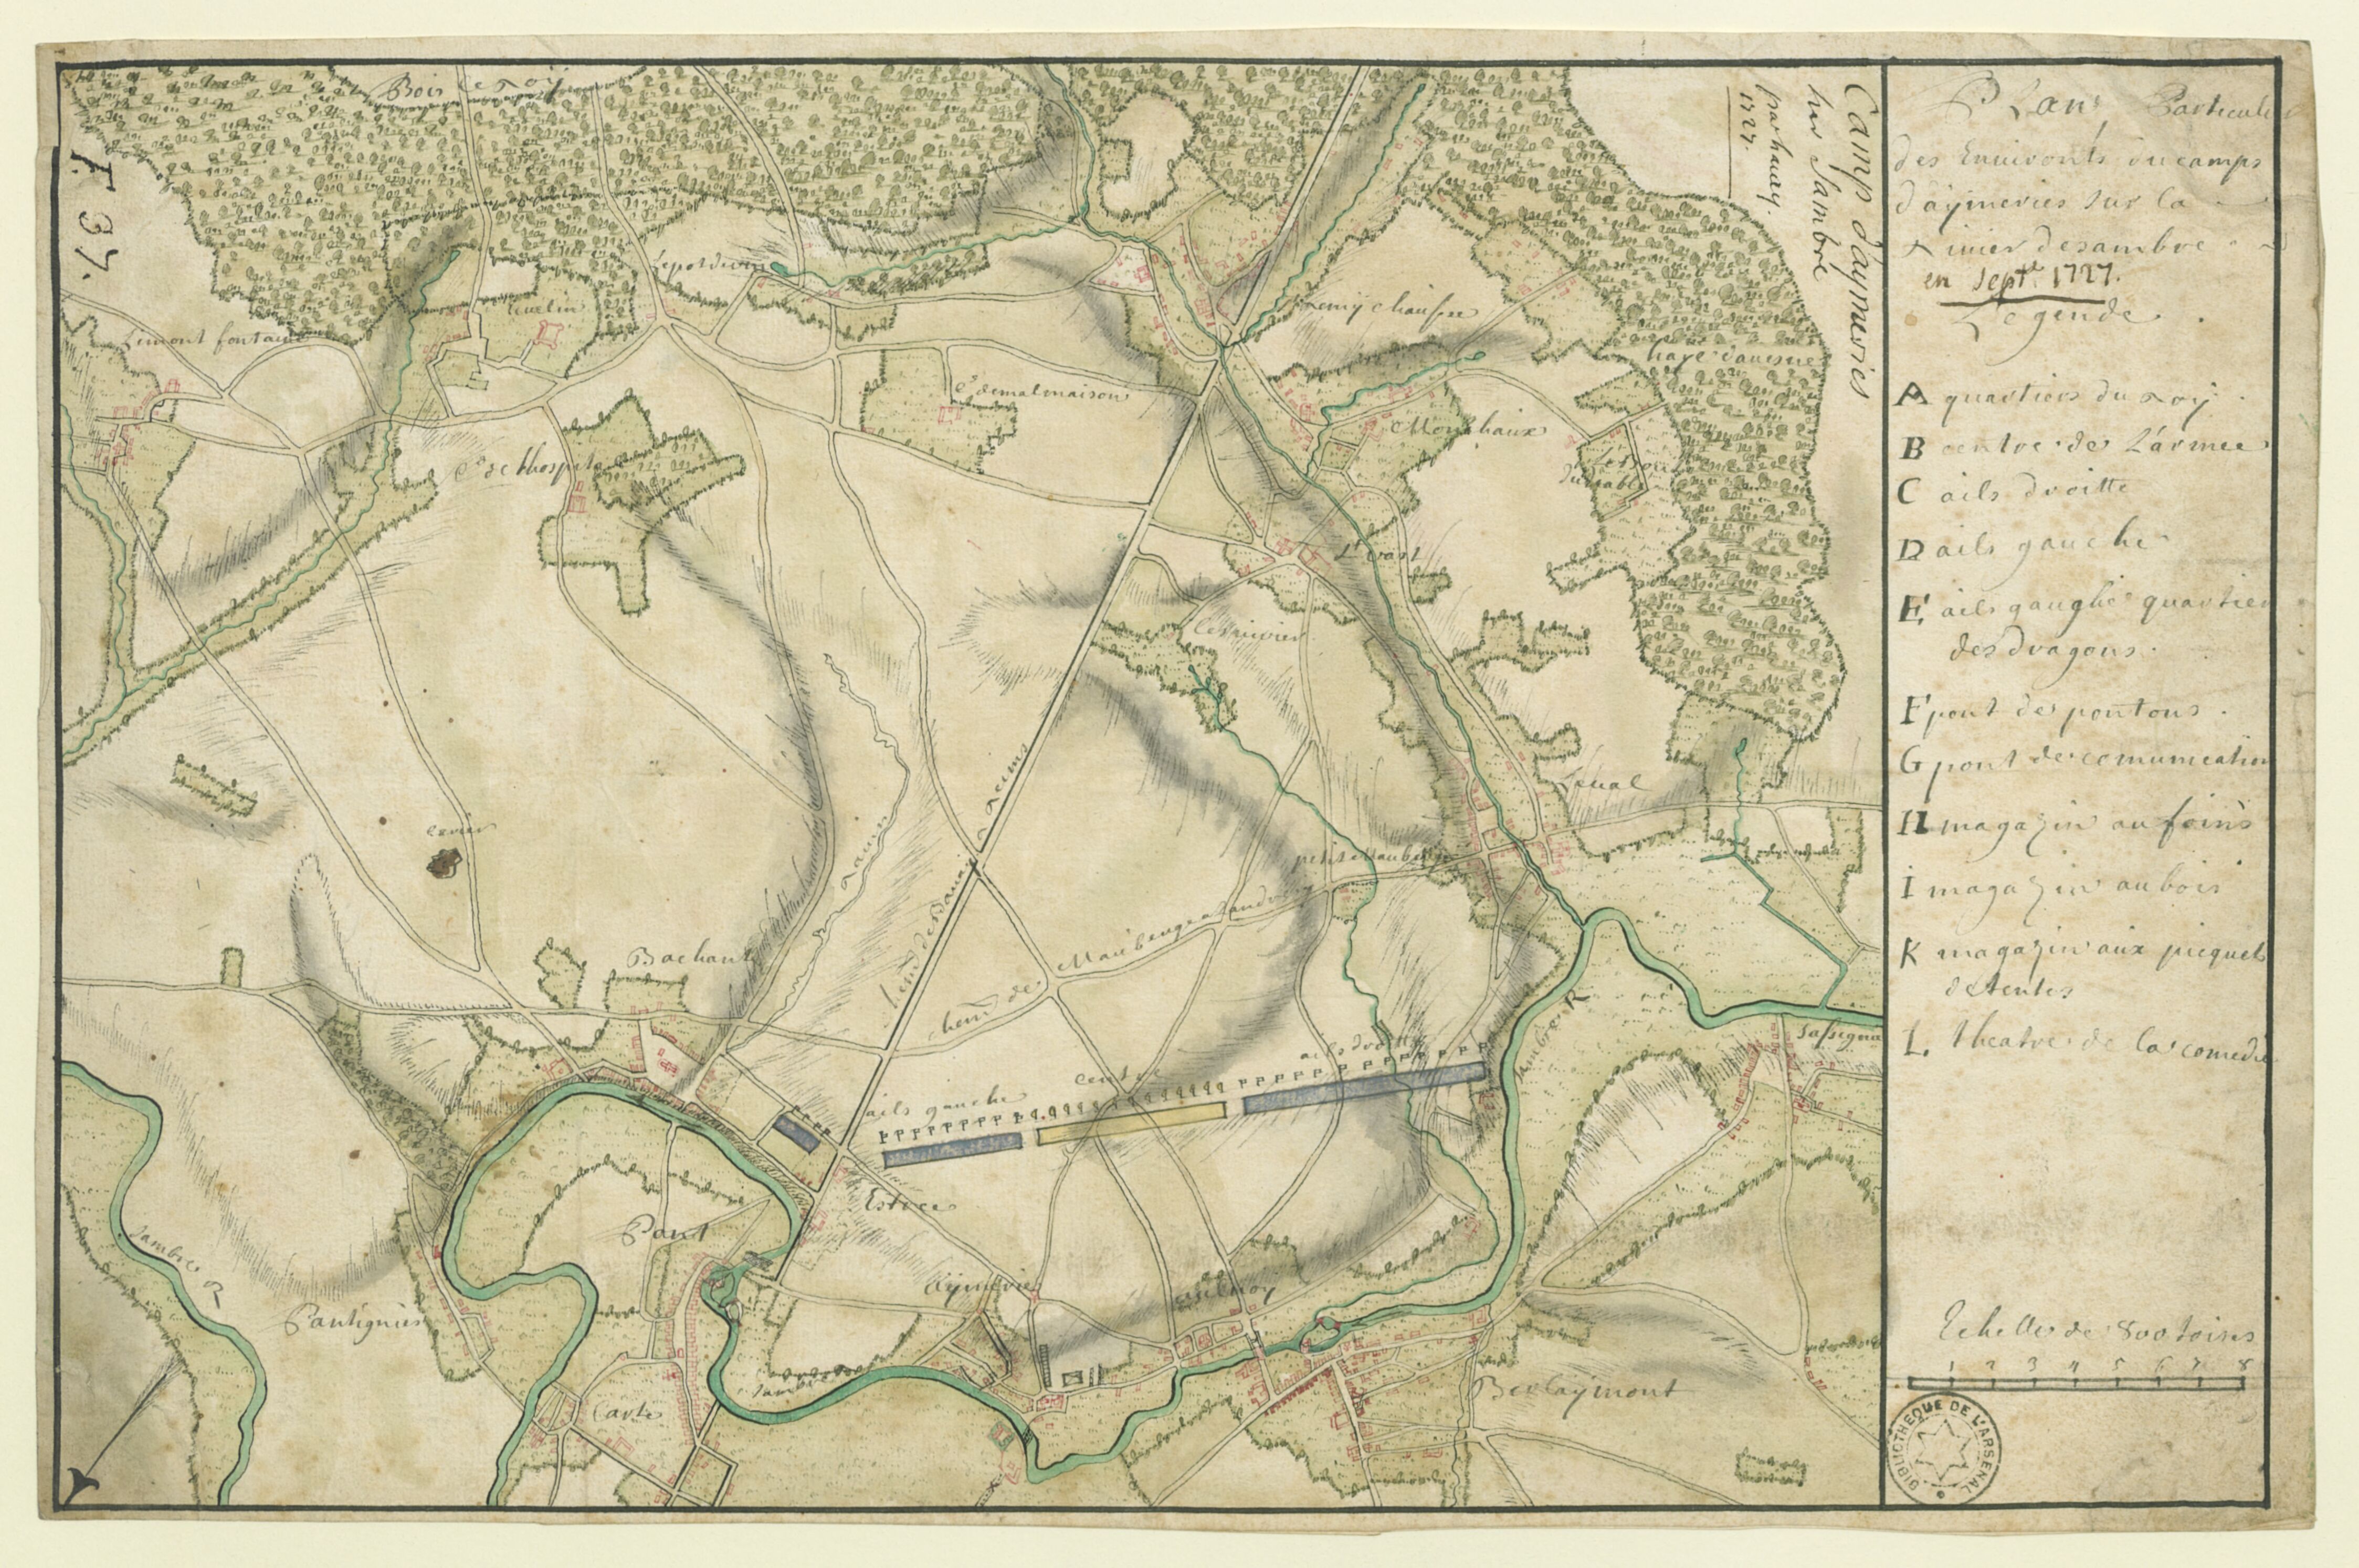 Plan particulier des environs du camp d'Aymeries sur la rivière de Sambre en sept. 1727